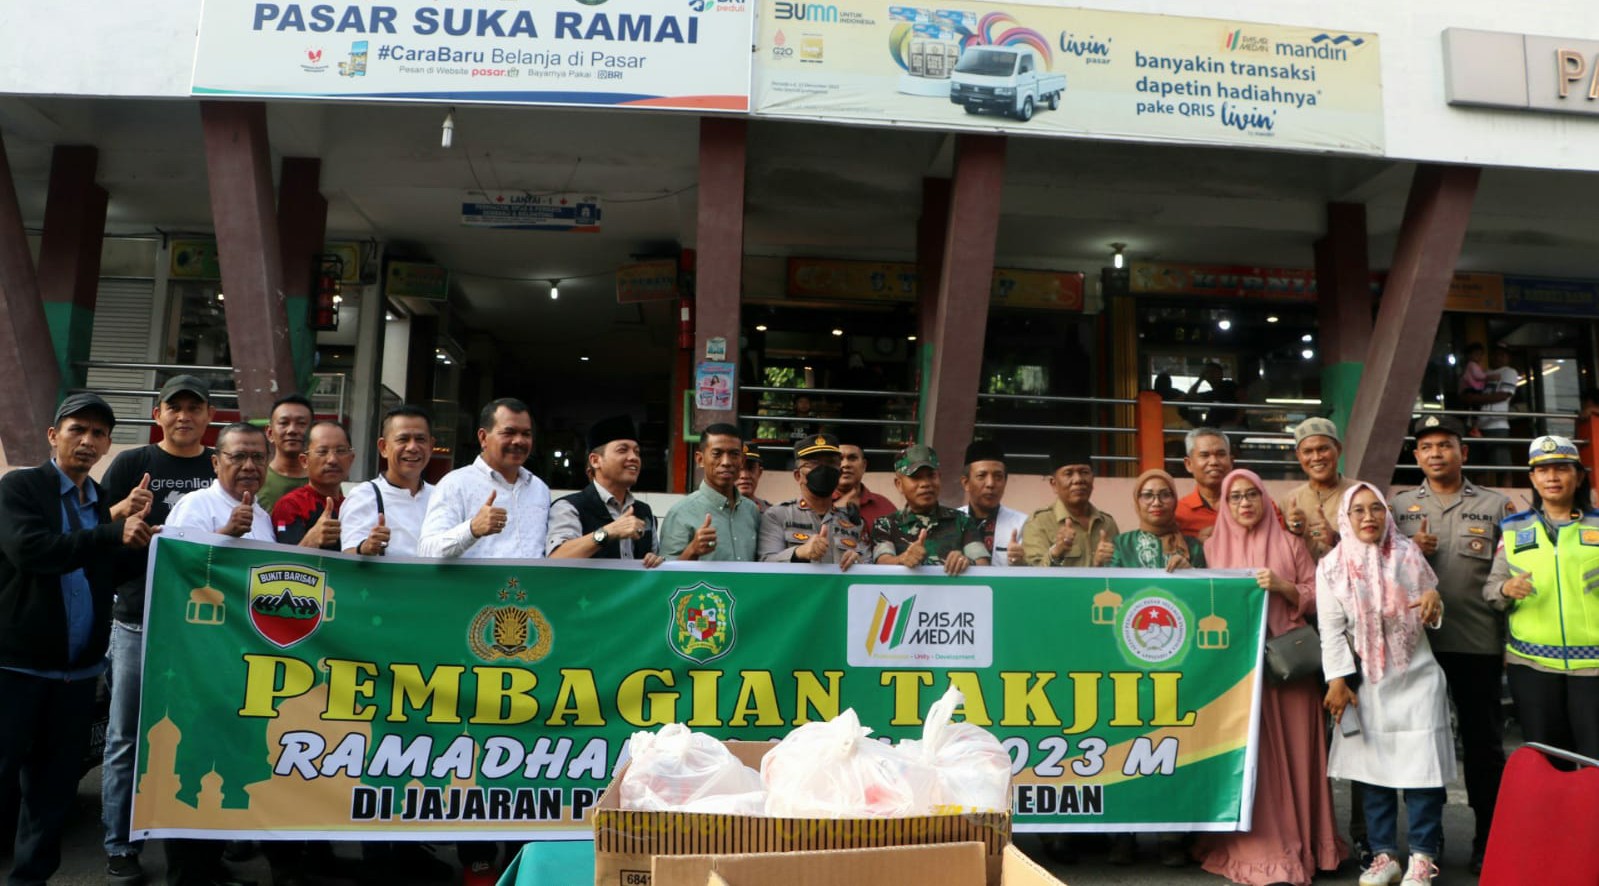 PUD Pasar Medan Kolaborasi Dengan Unsur Forkopimcam Bagi Takjil di Pasar Sukaramai